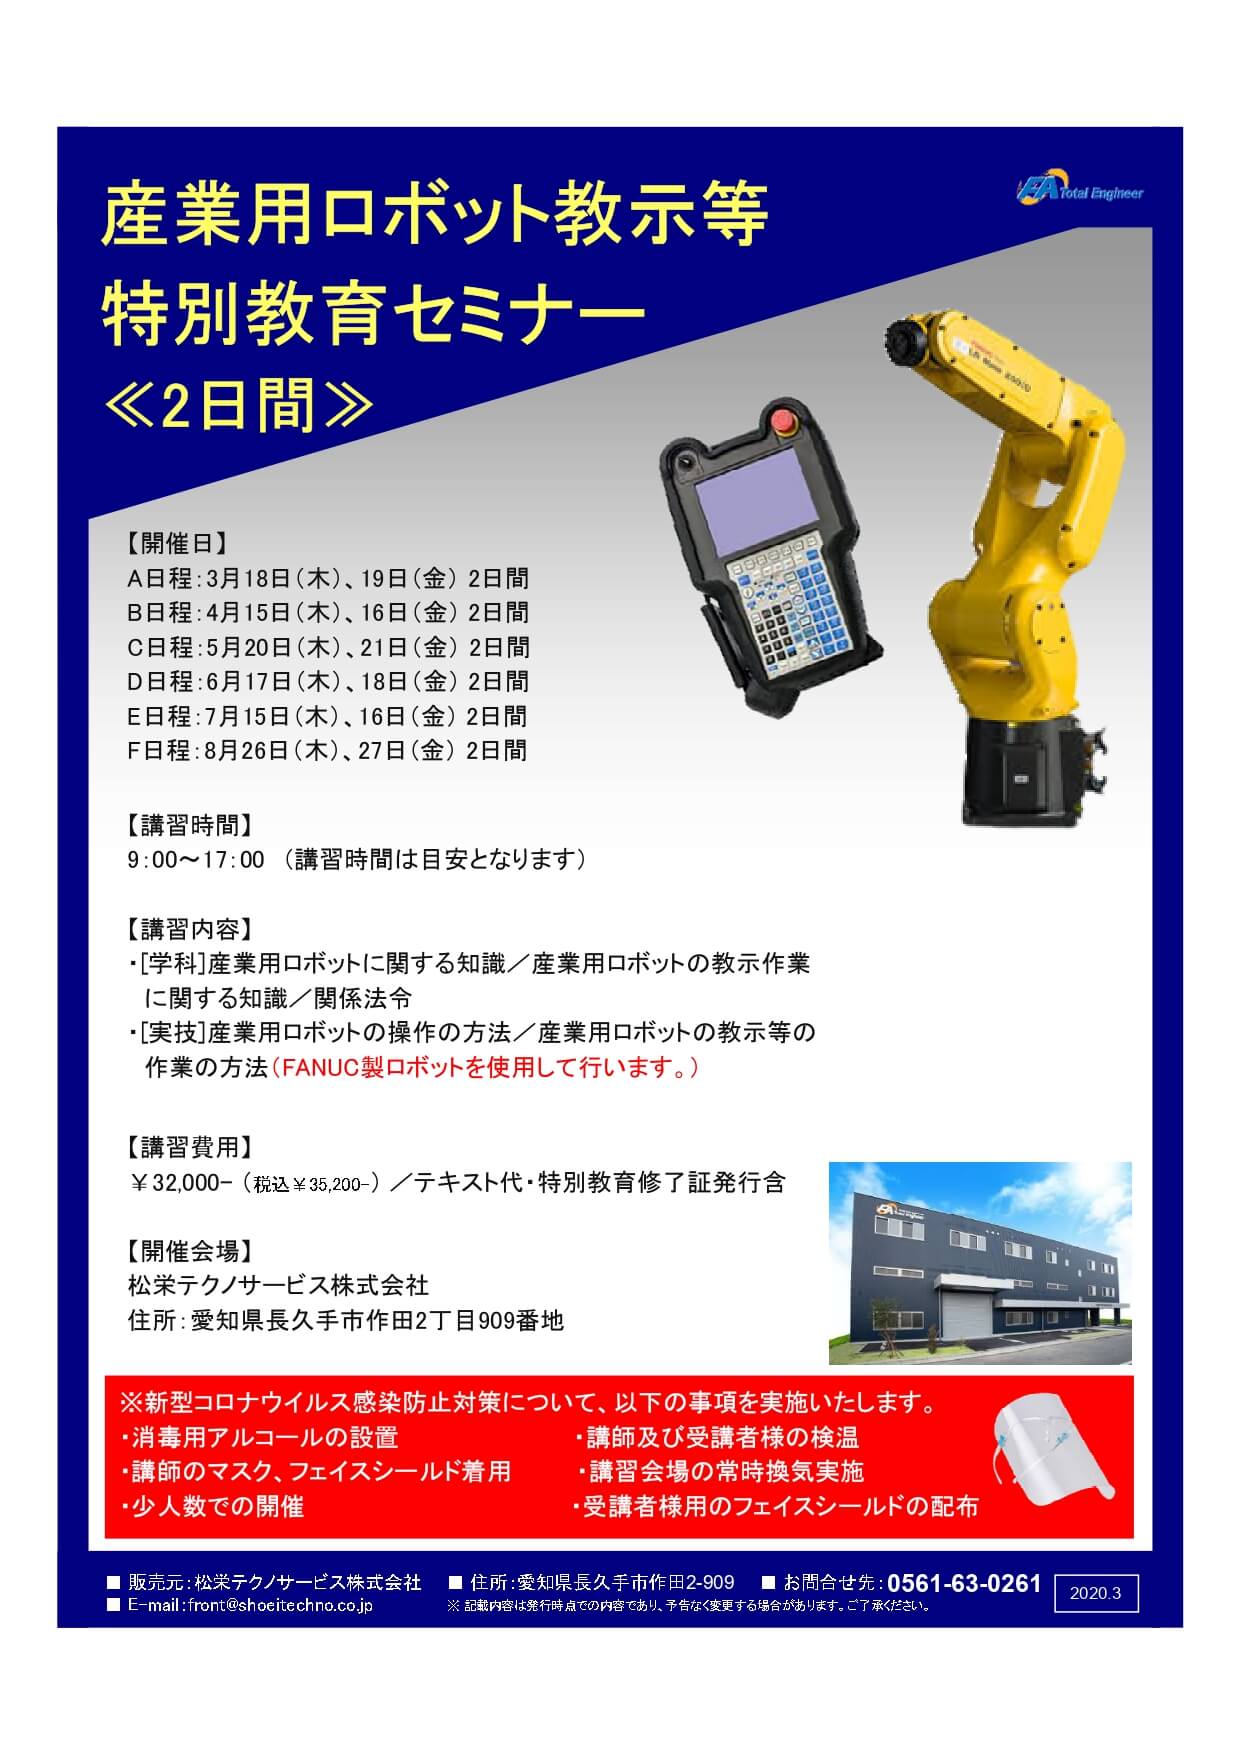 【愛知県開催】産業用ロボット教示等特別教育セミナー開催のお知らせ。